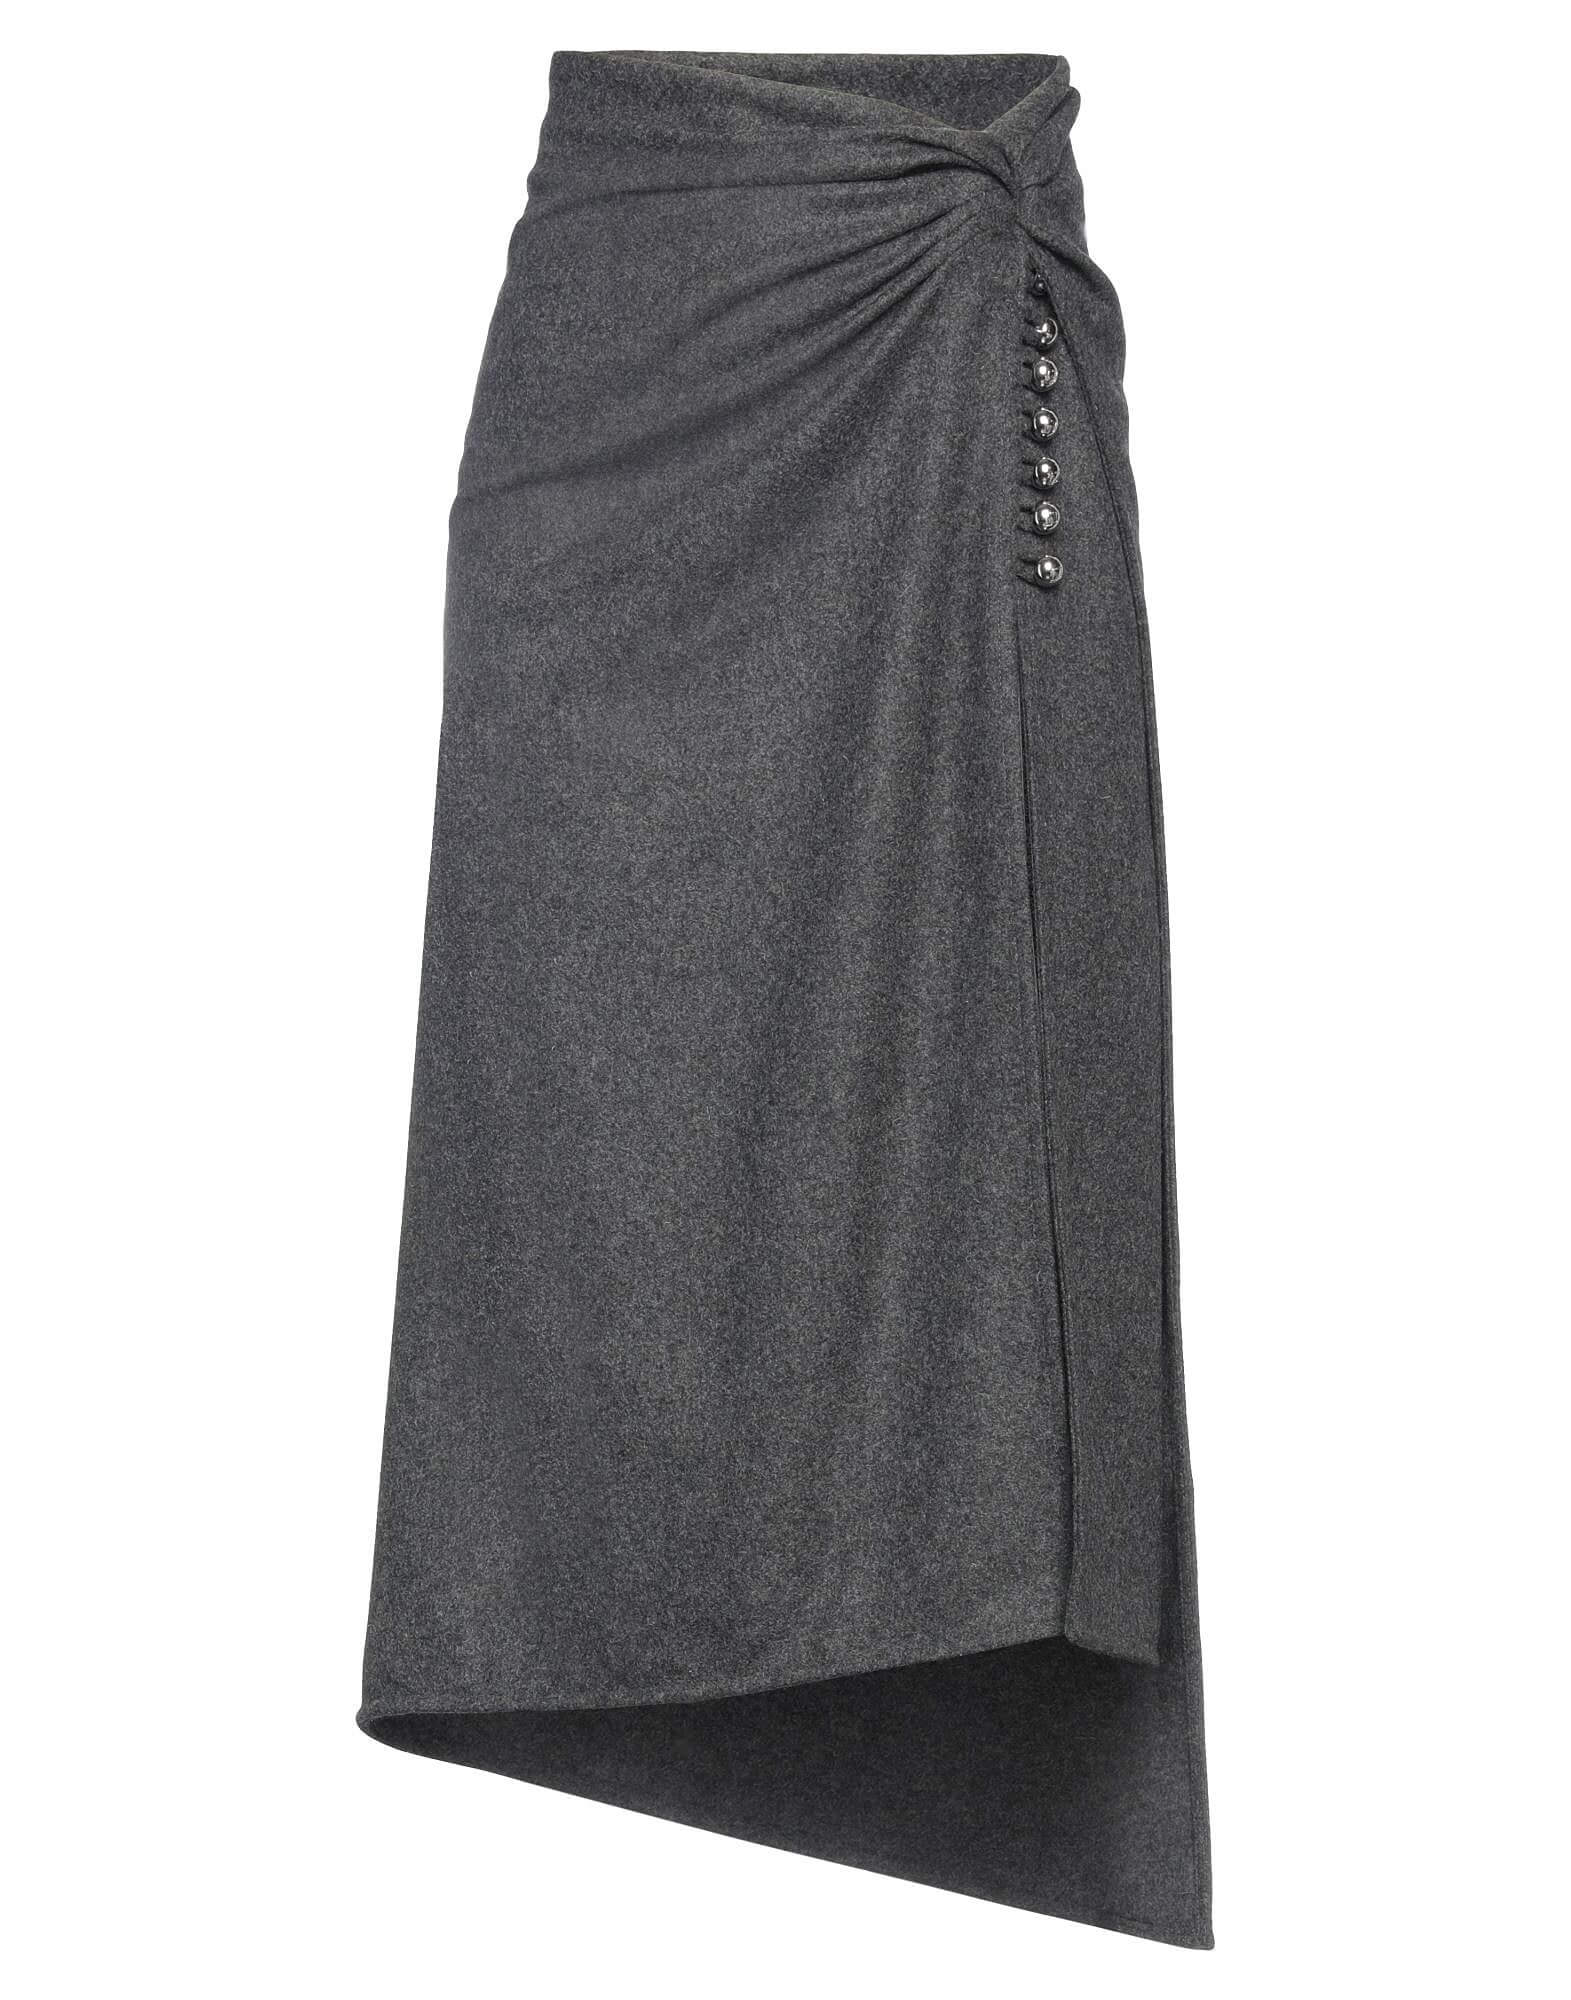 Юбка Paco Rabanne Midi, серый юбка карандаш pompa миди размер 40 мультиколор